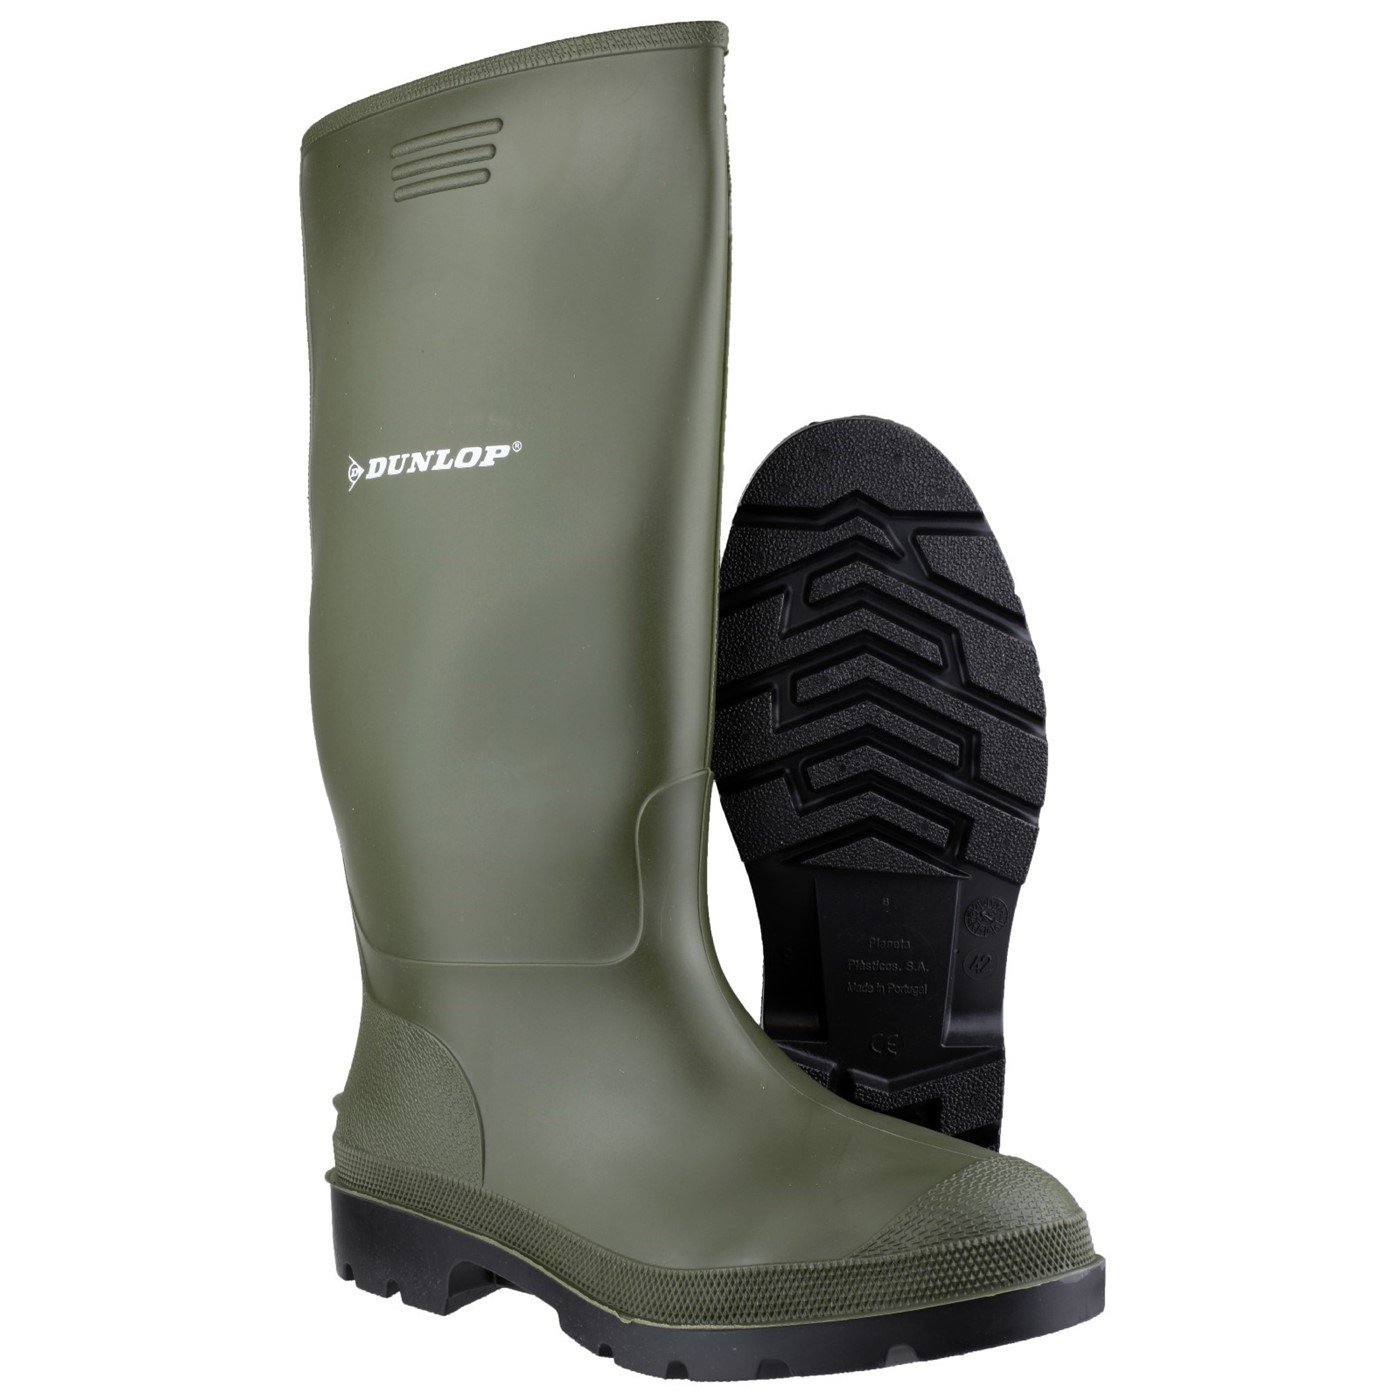 Dunlop Pricemaster Boot, Green, Size 11(46)